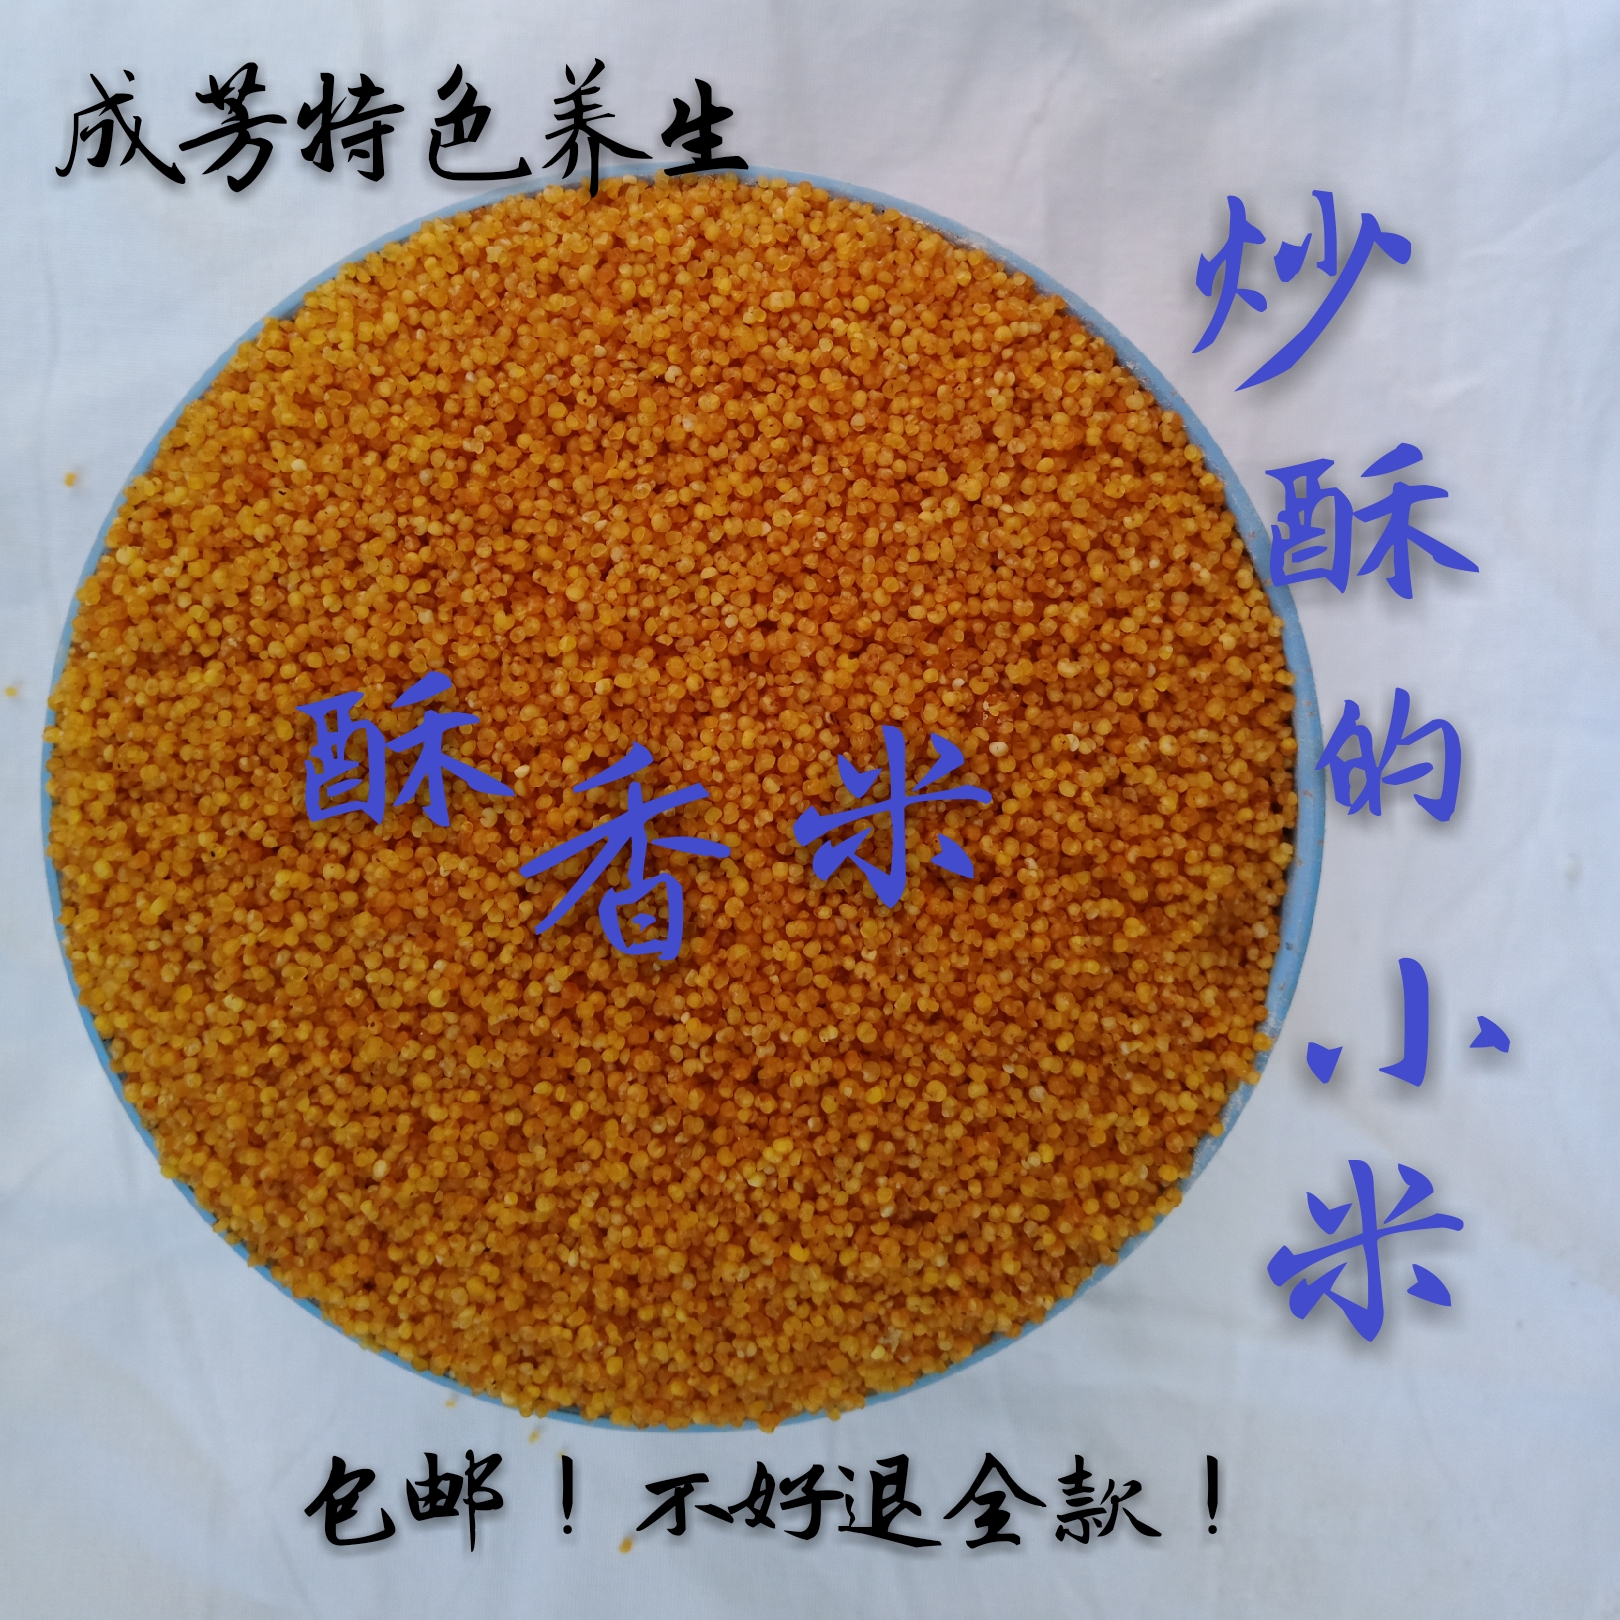 纯手工炒熟的黄小米炒酥的黄小米即食酥糖原料粗粮一份1300g包邮